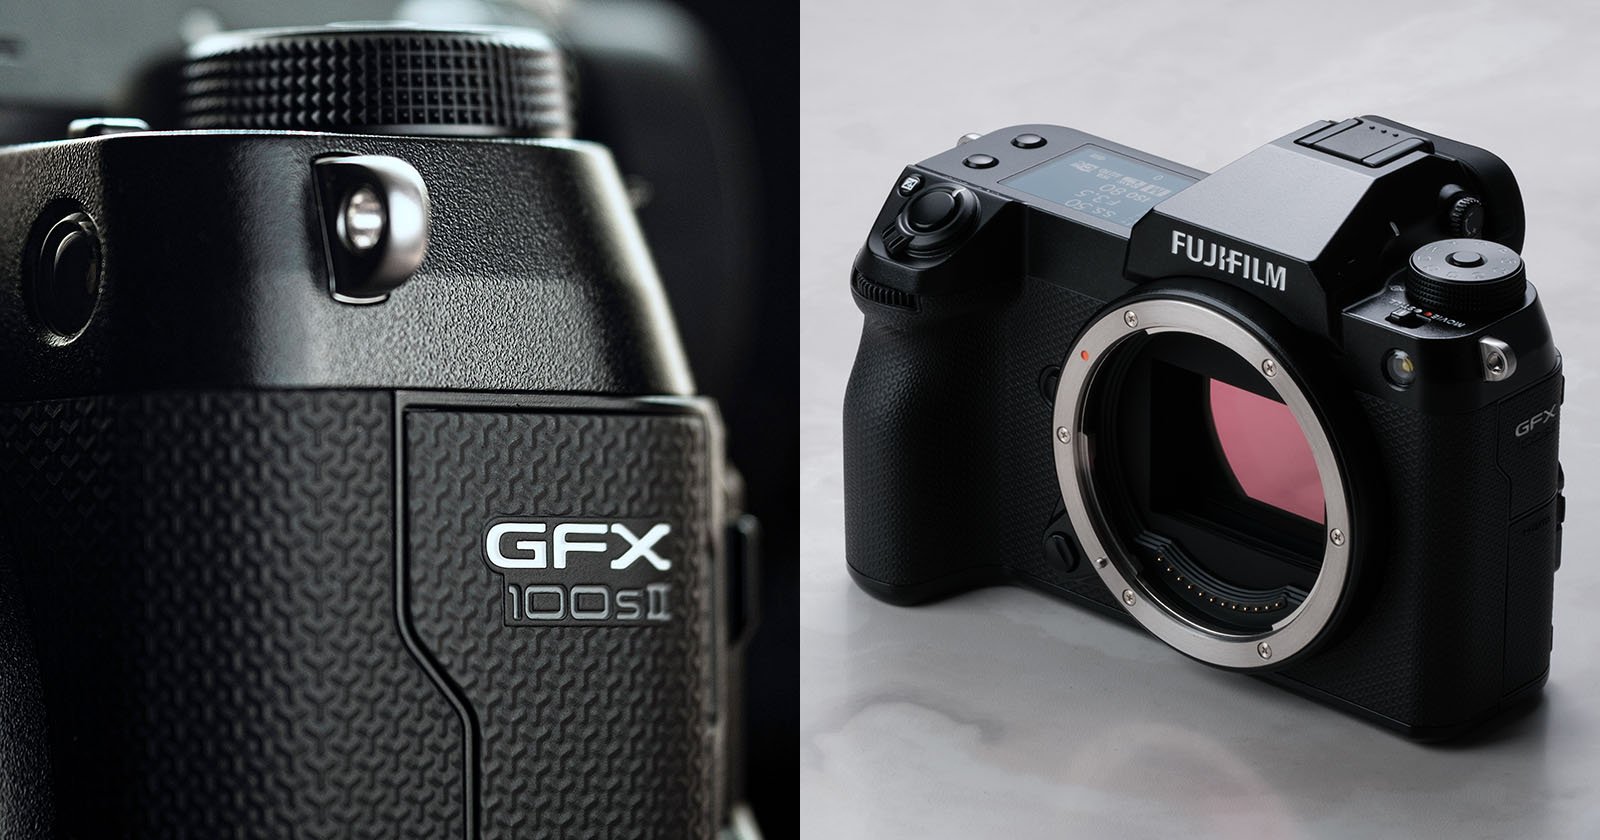  gfx 100s camera 